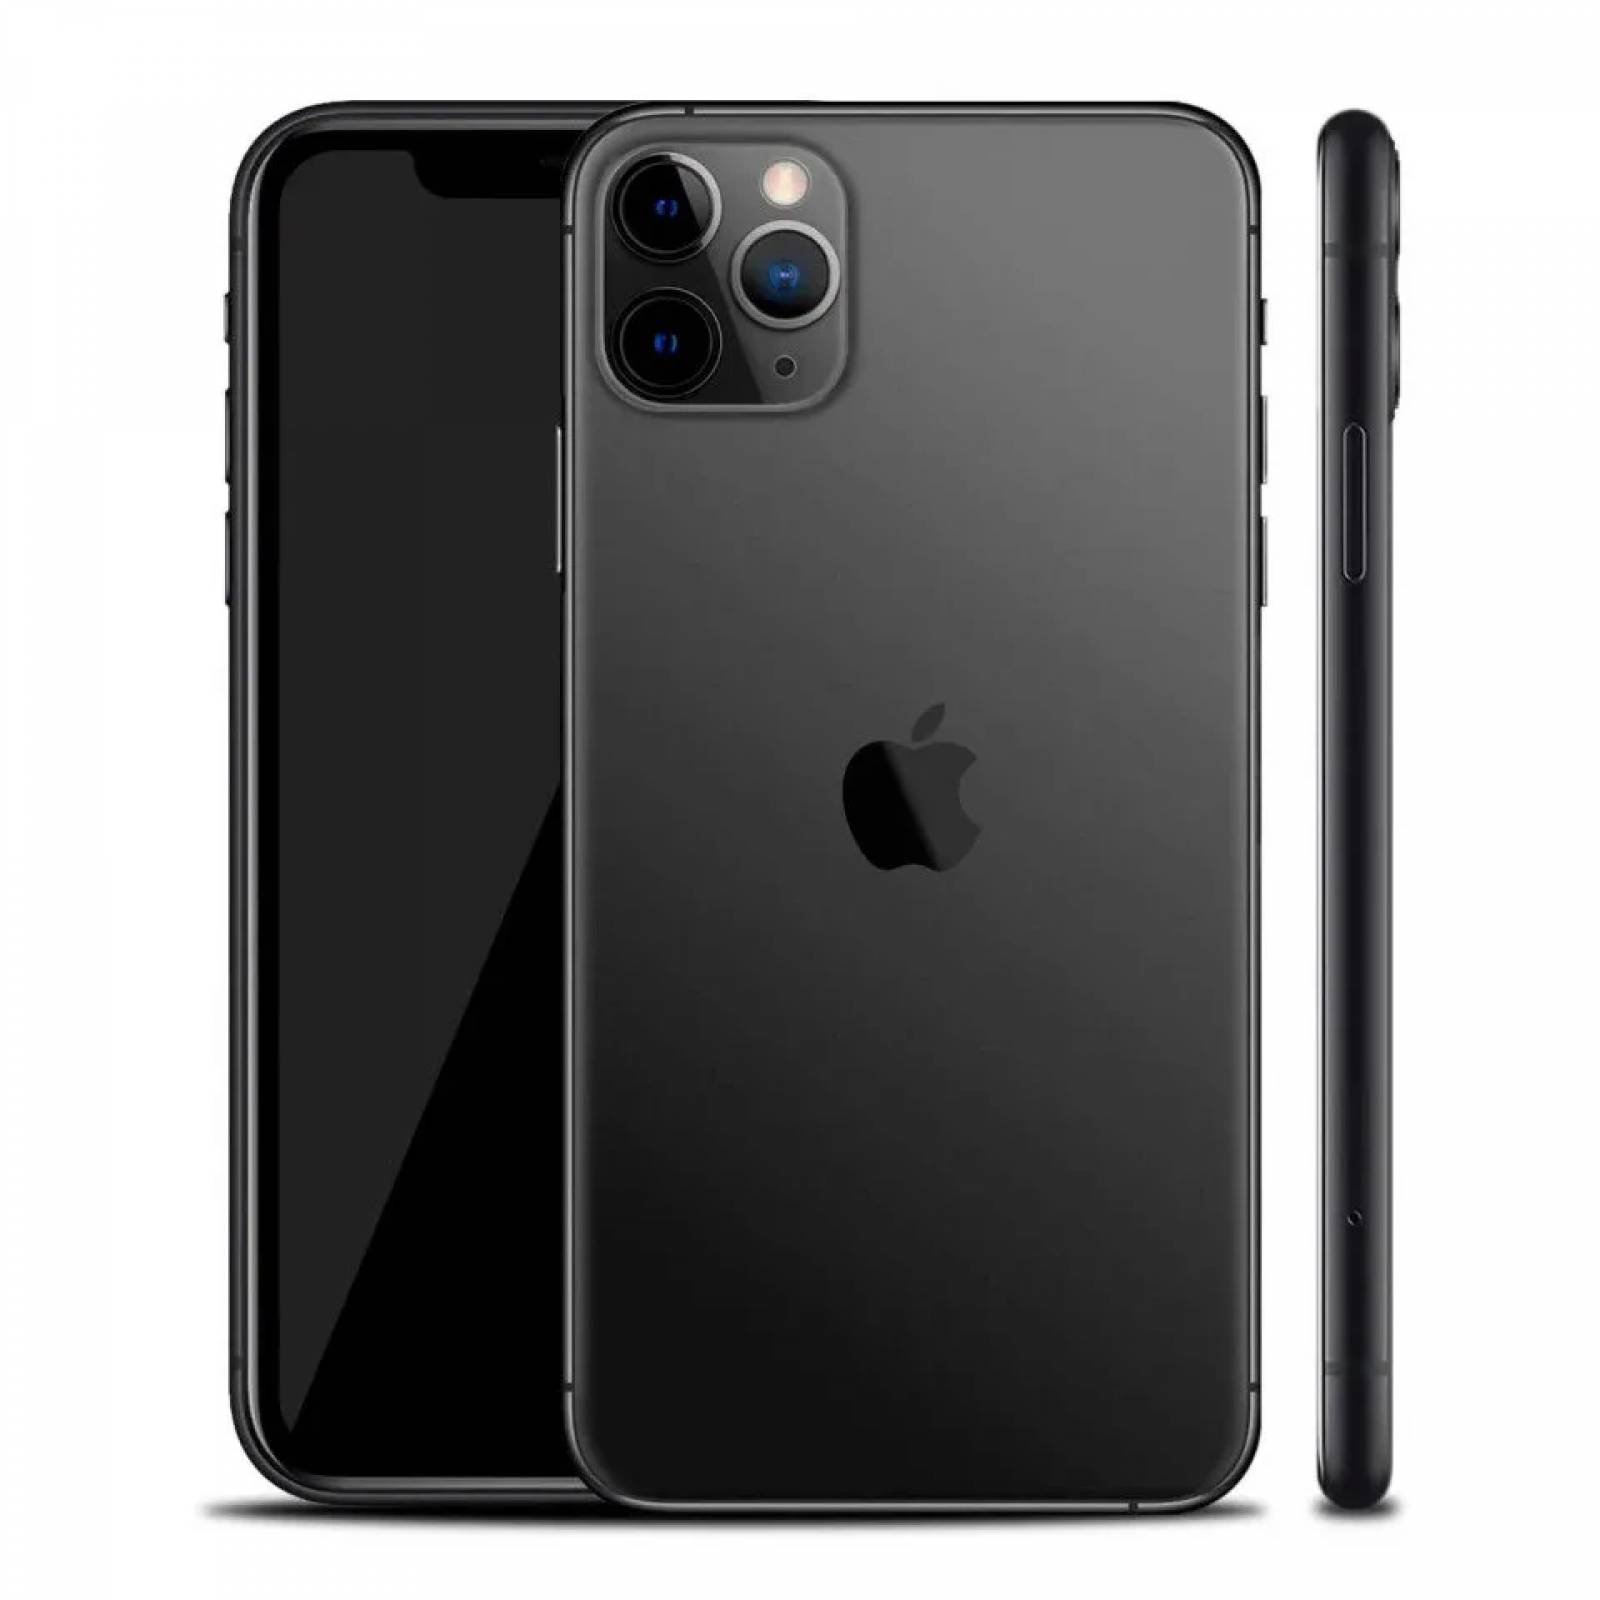 Iphone 11 128 Gb Negro Reacondicionado - Grado Excelente ( A+ ) + Garantía  2 Años + Funda Gratis con Ofertas en Carrefour